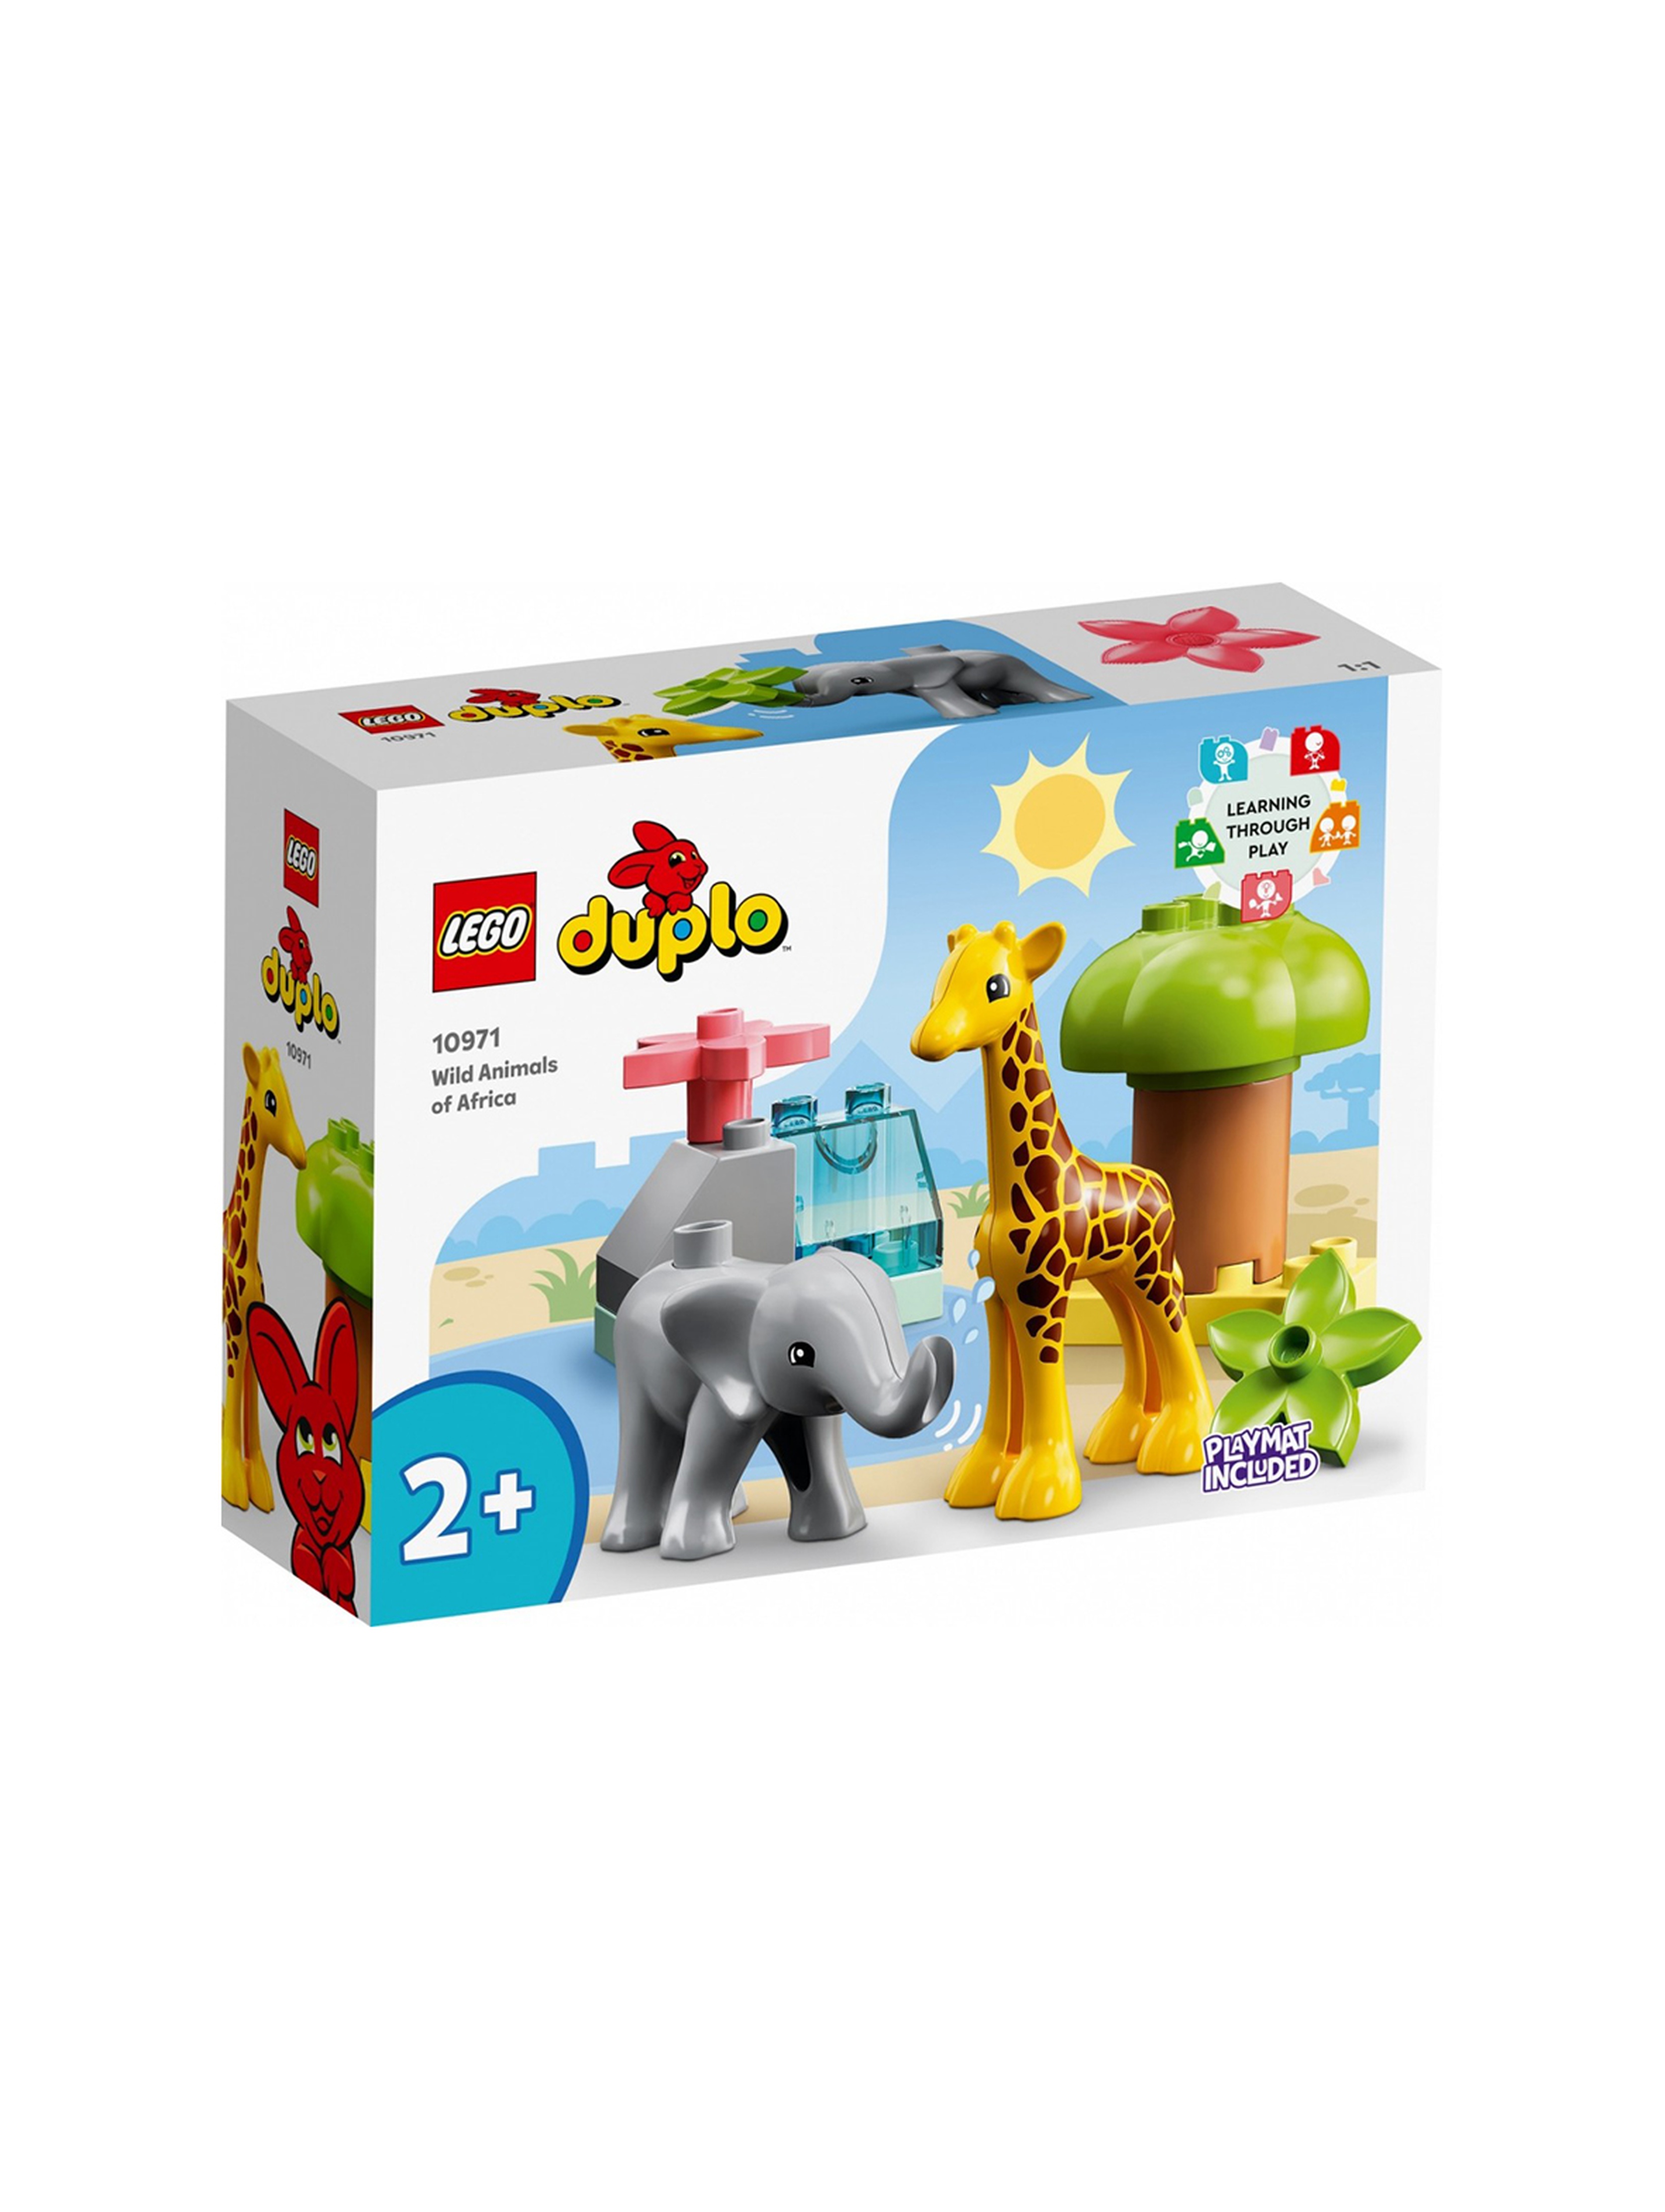 LEGO DUPLO - Dzikie zwierzęta Afryki 10971 - 10 elementów, wiek 2+